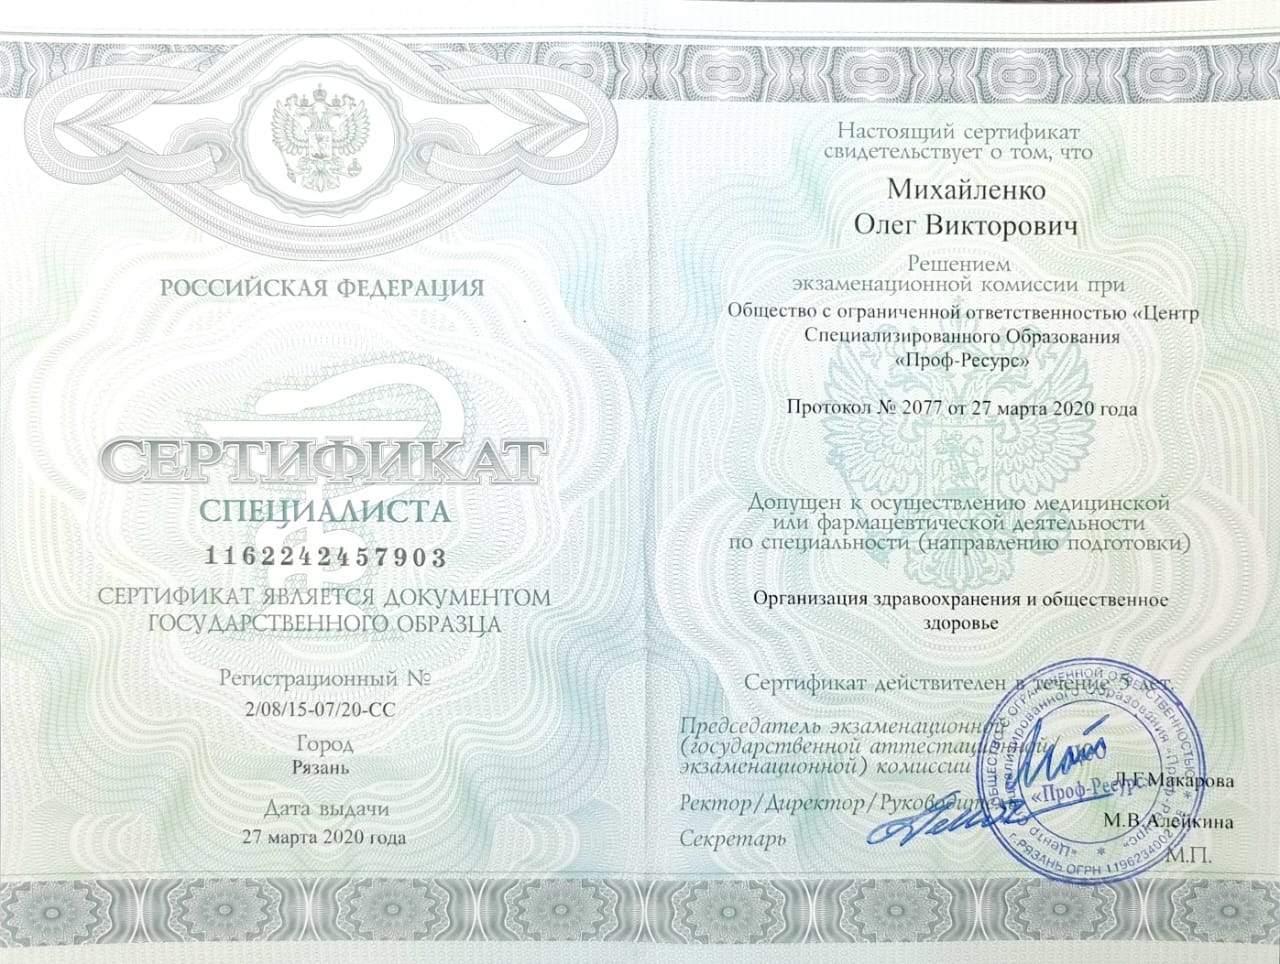 Сертификат организация здравоохранения и общественное здоровье